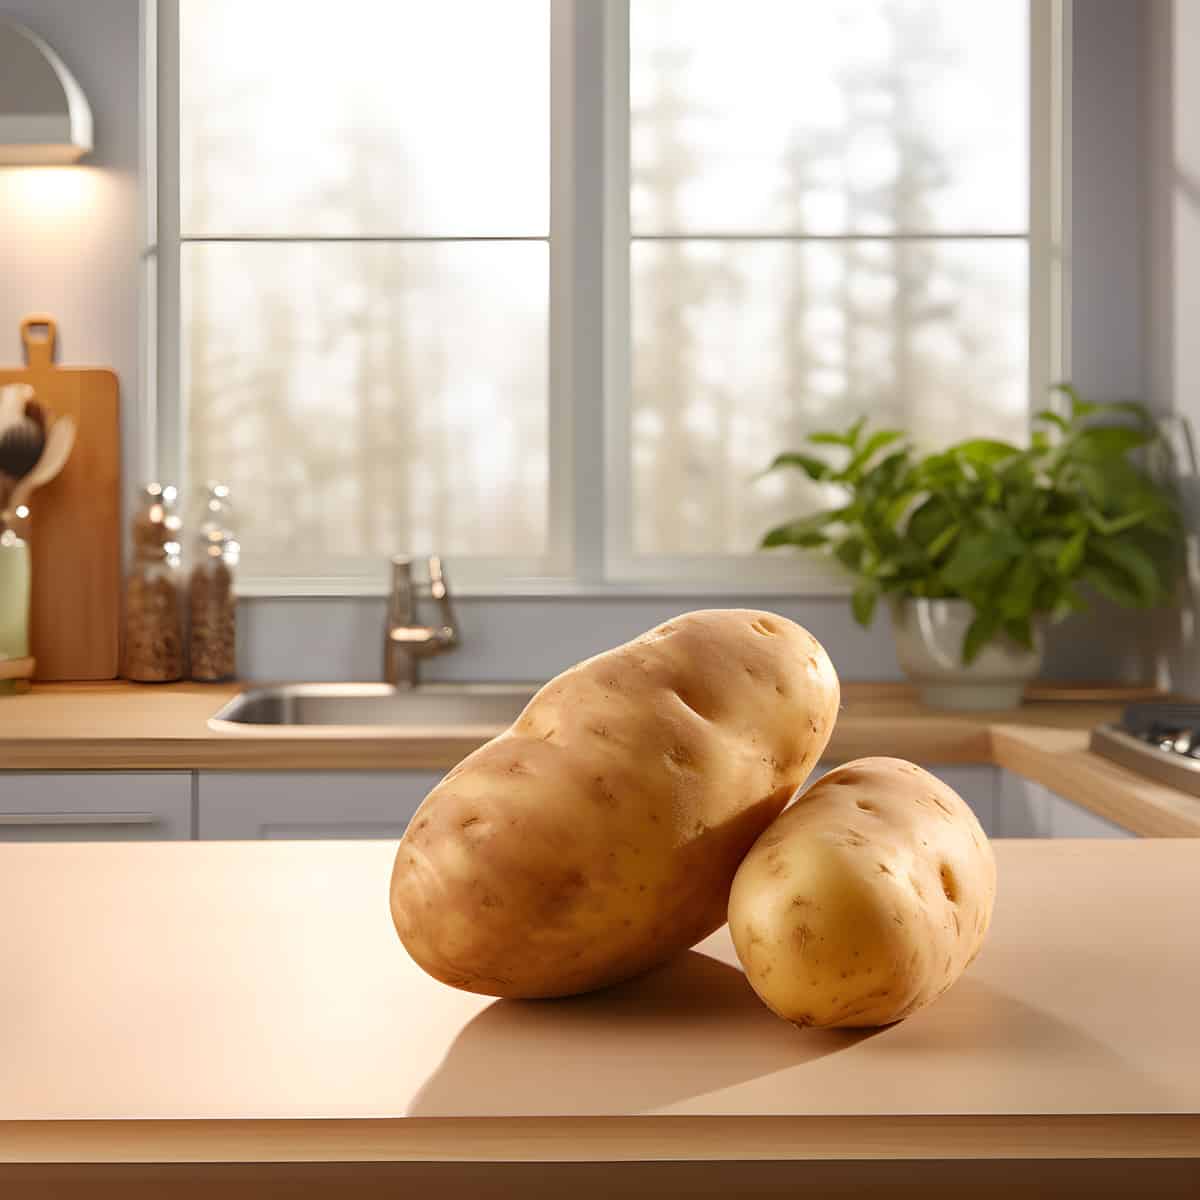 Brambory Potatoes on a kitchen counter